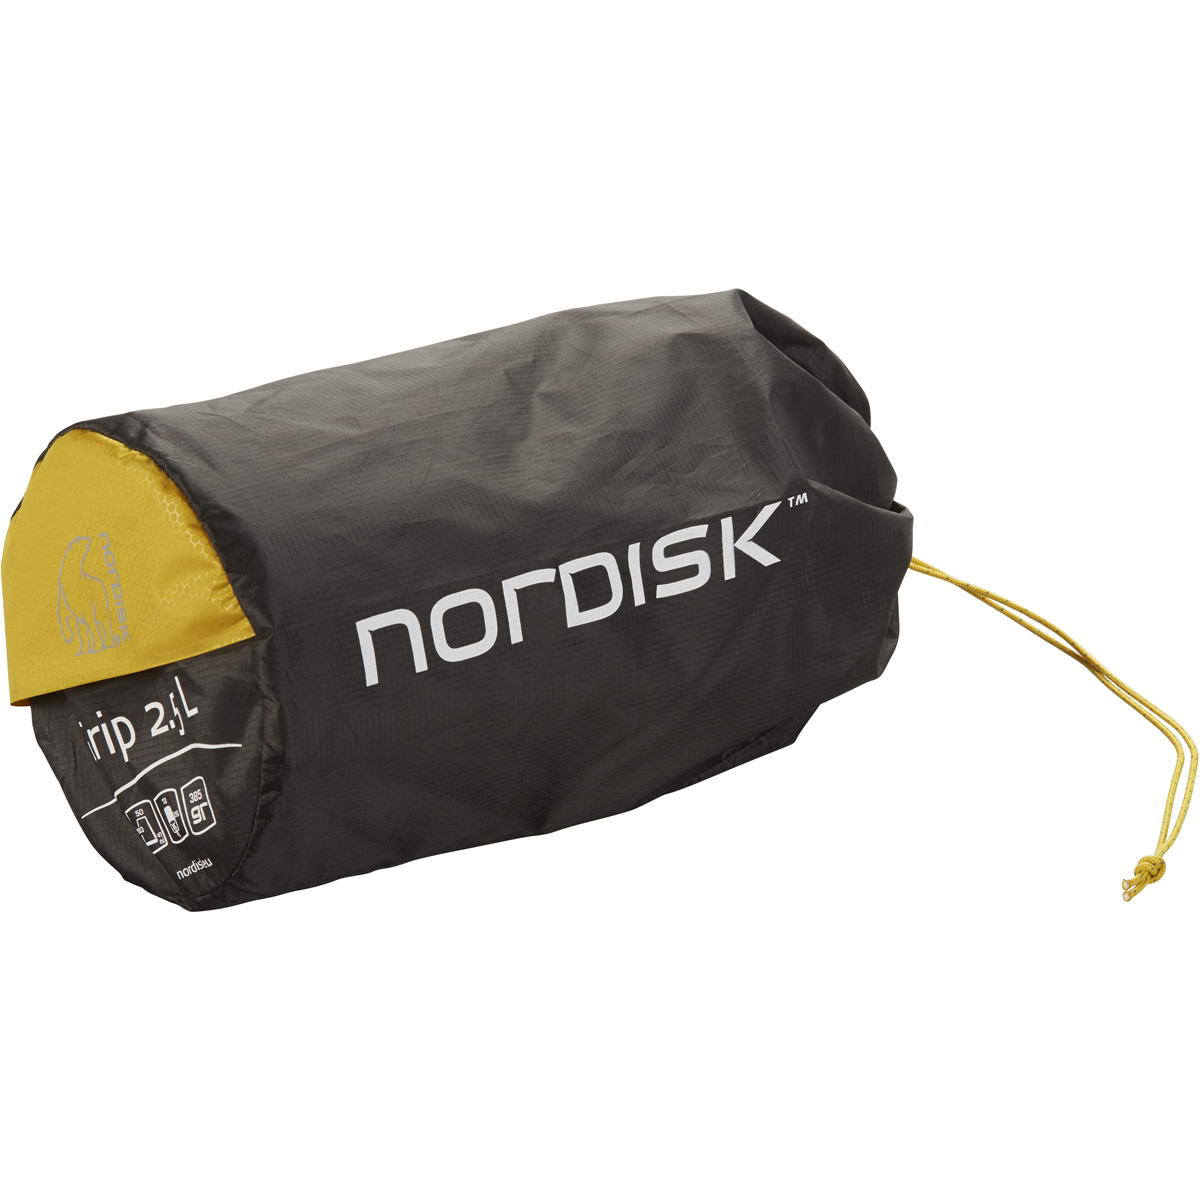 Nordisk Grip 2.5 cm - L